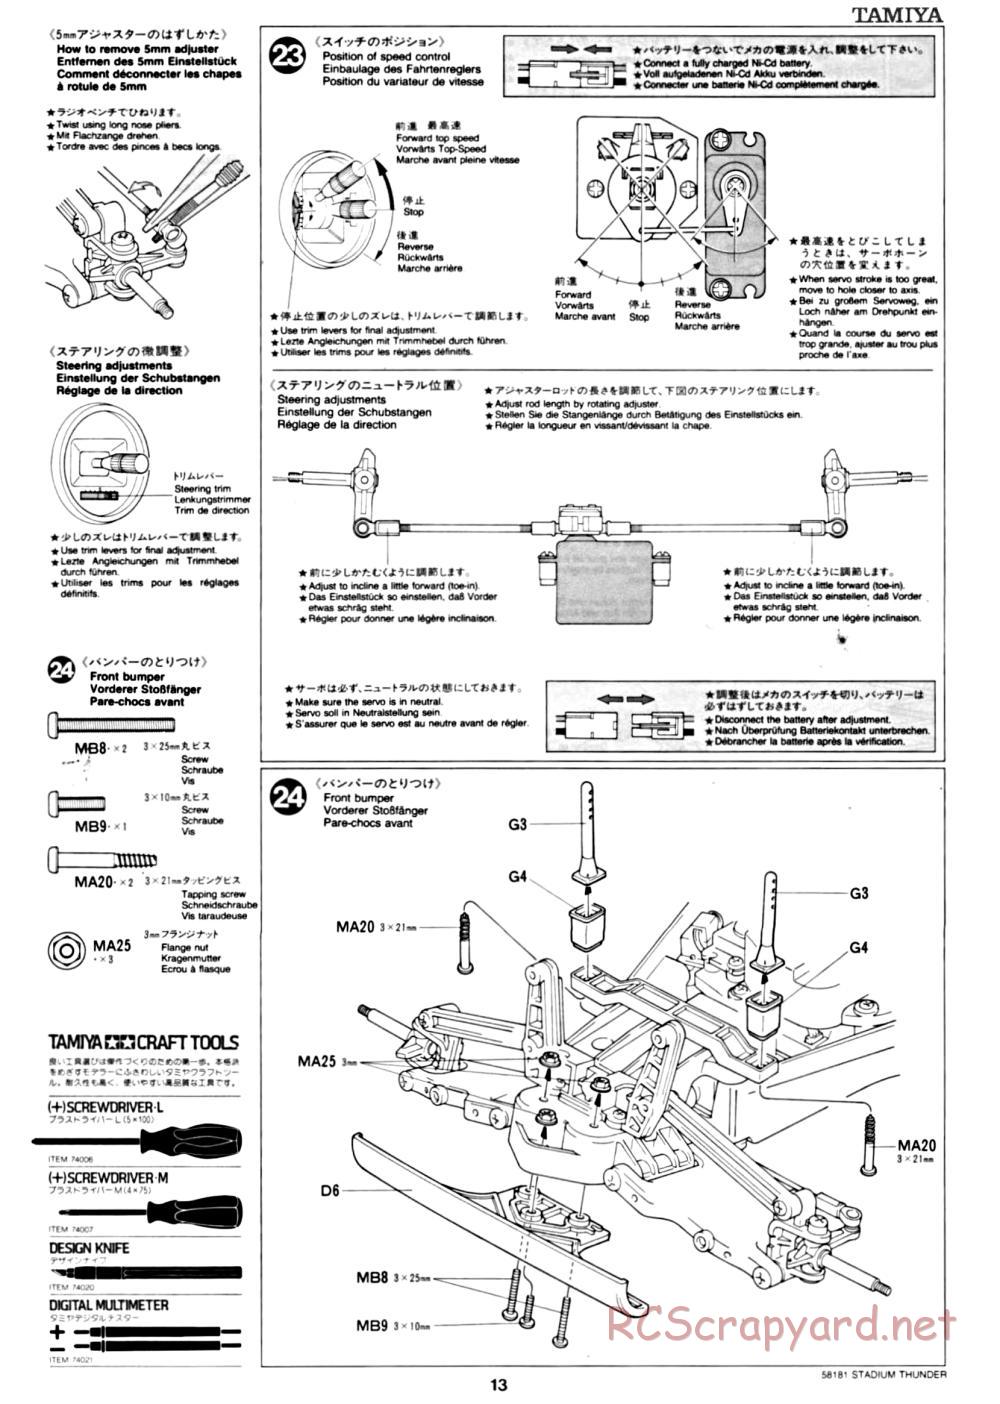 Tamiya - Stadium Thunder Chassis - Manual - Page 13